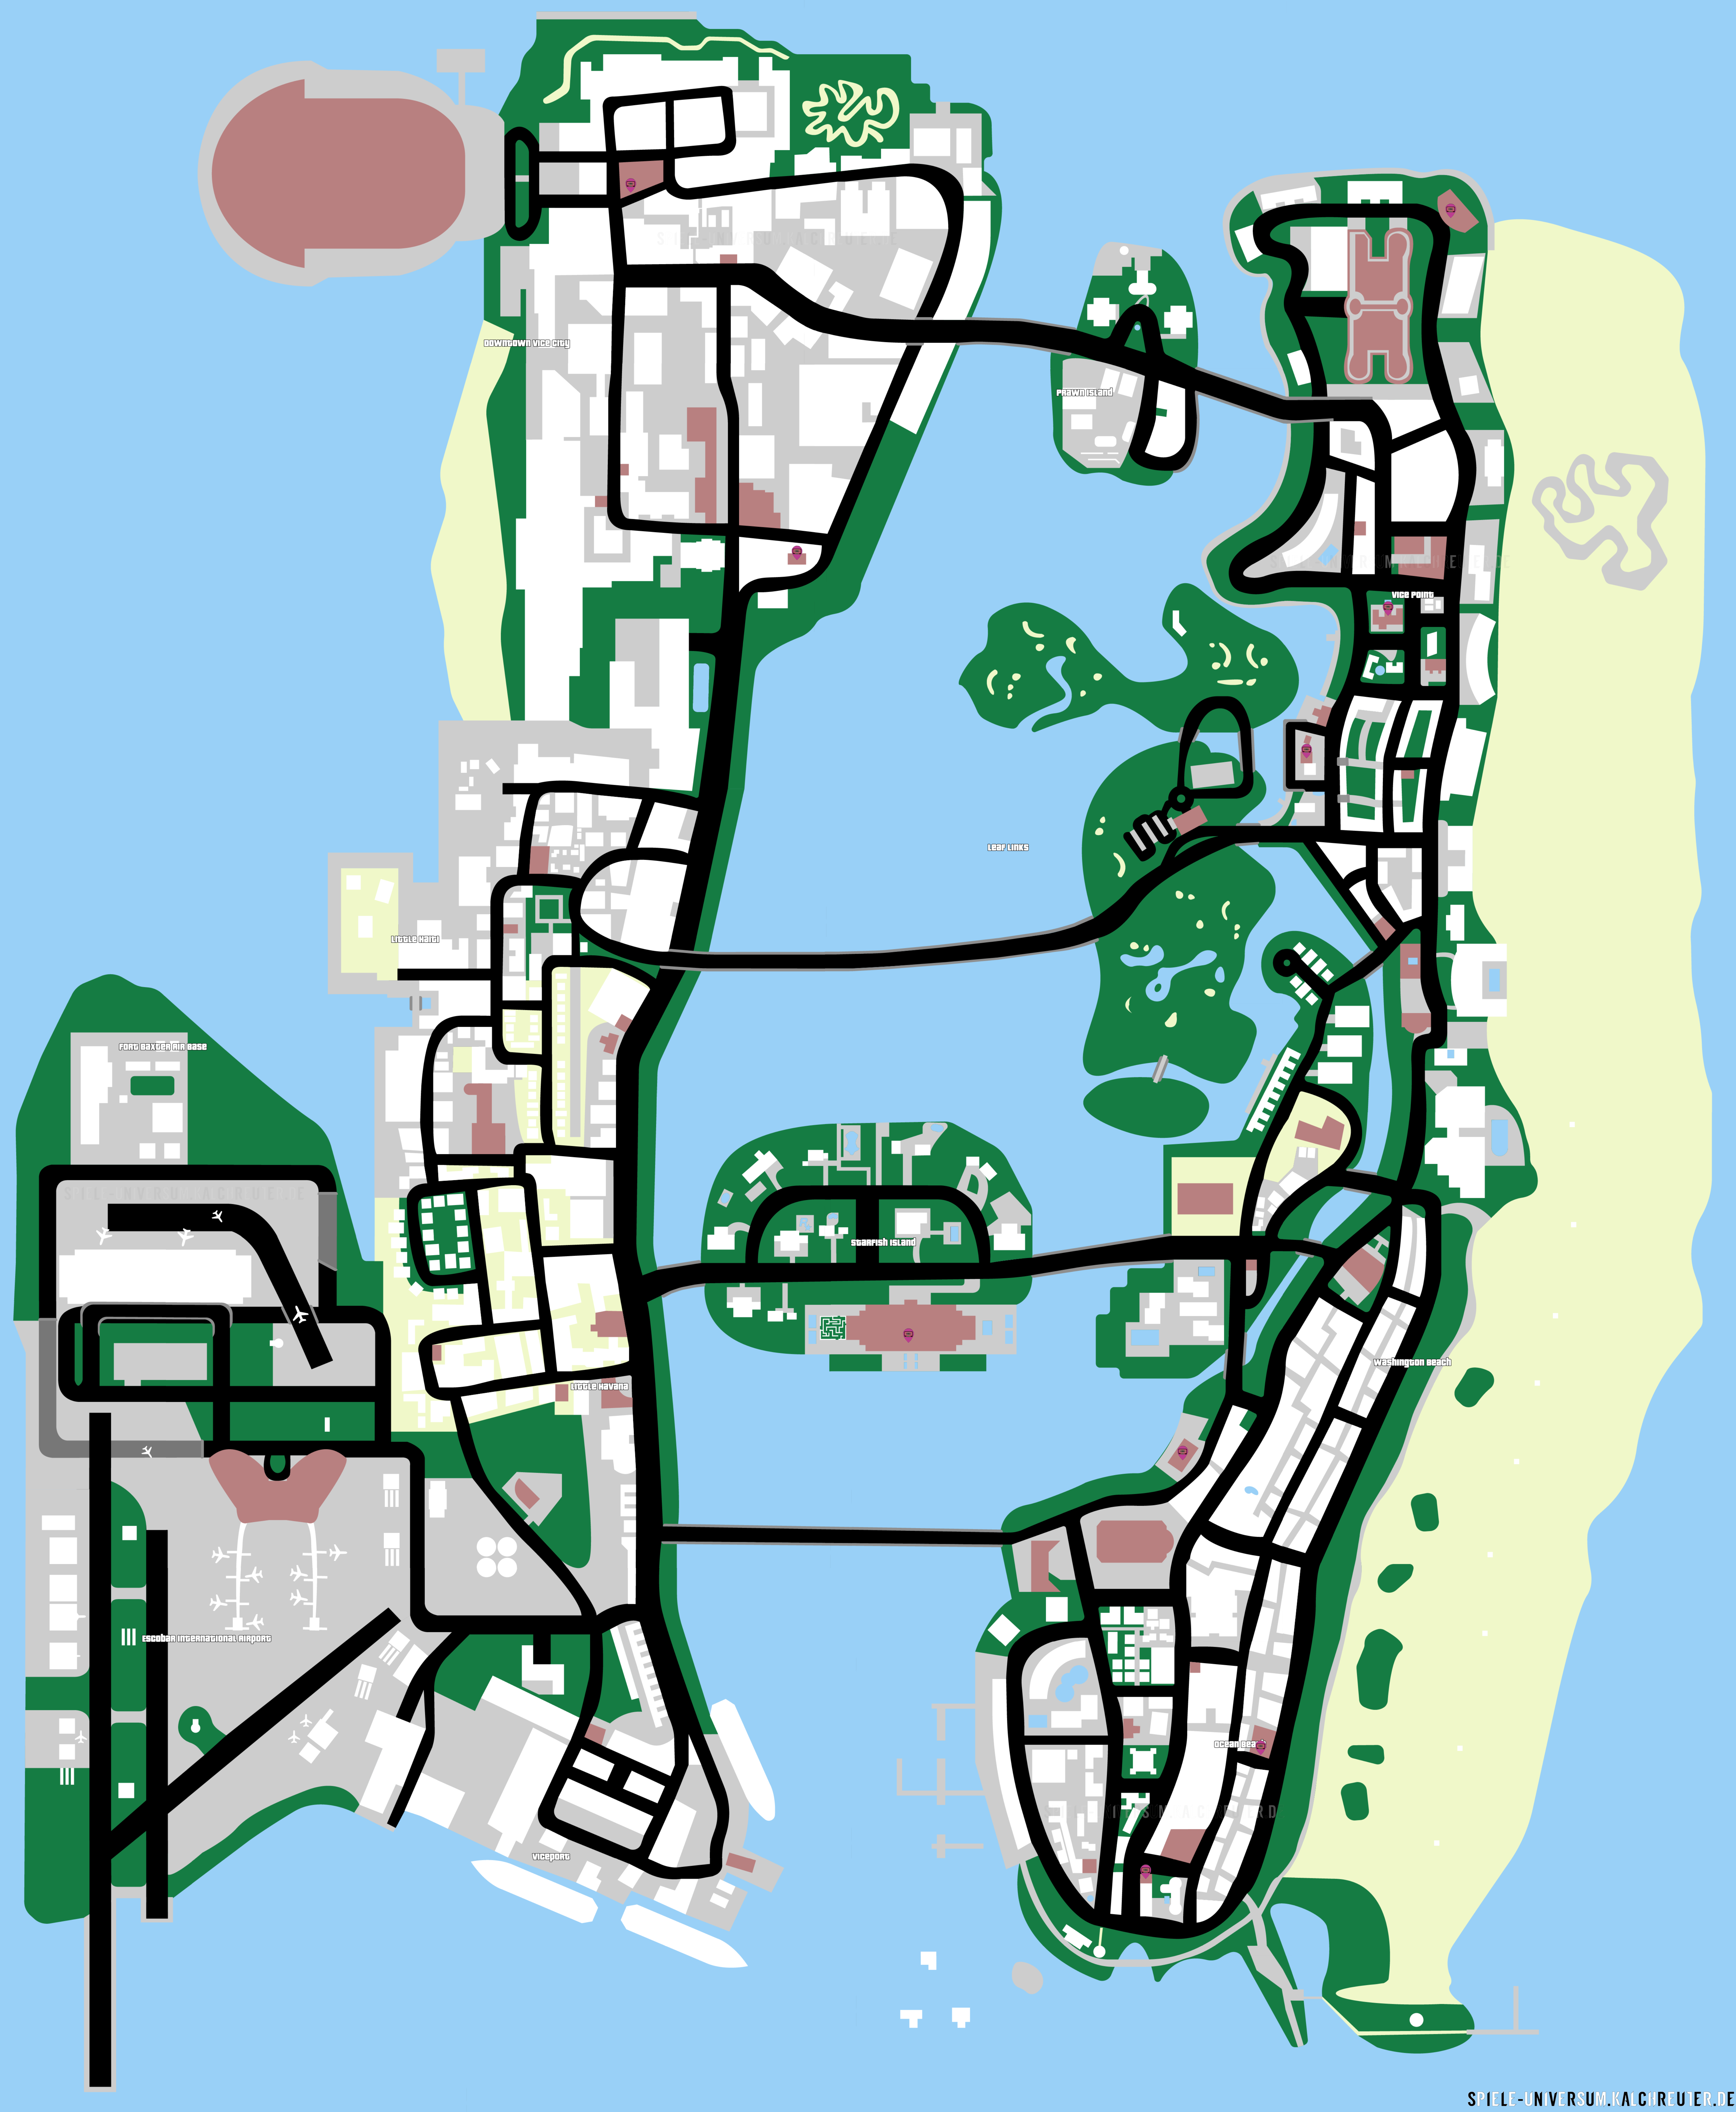 Speicherhäuser-Karte - Bild wird geladen